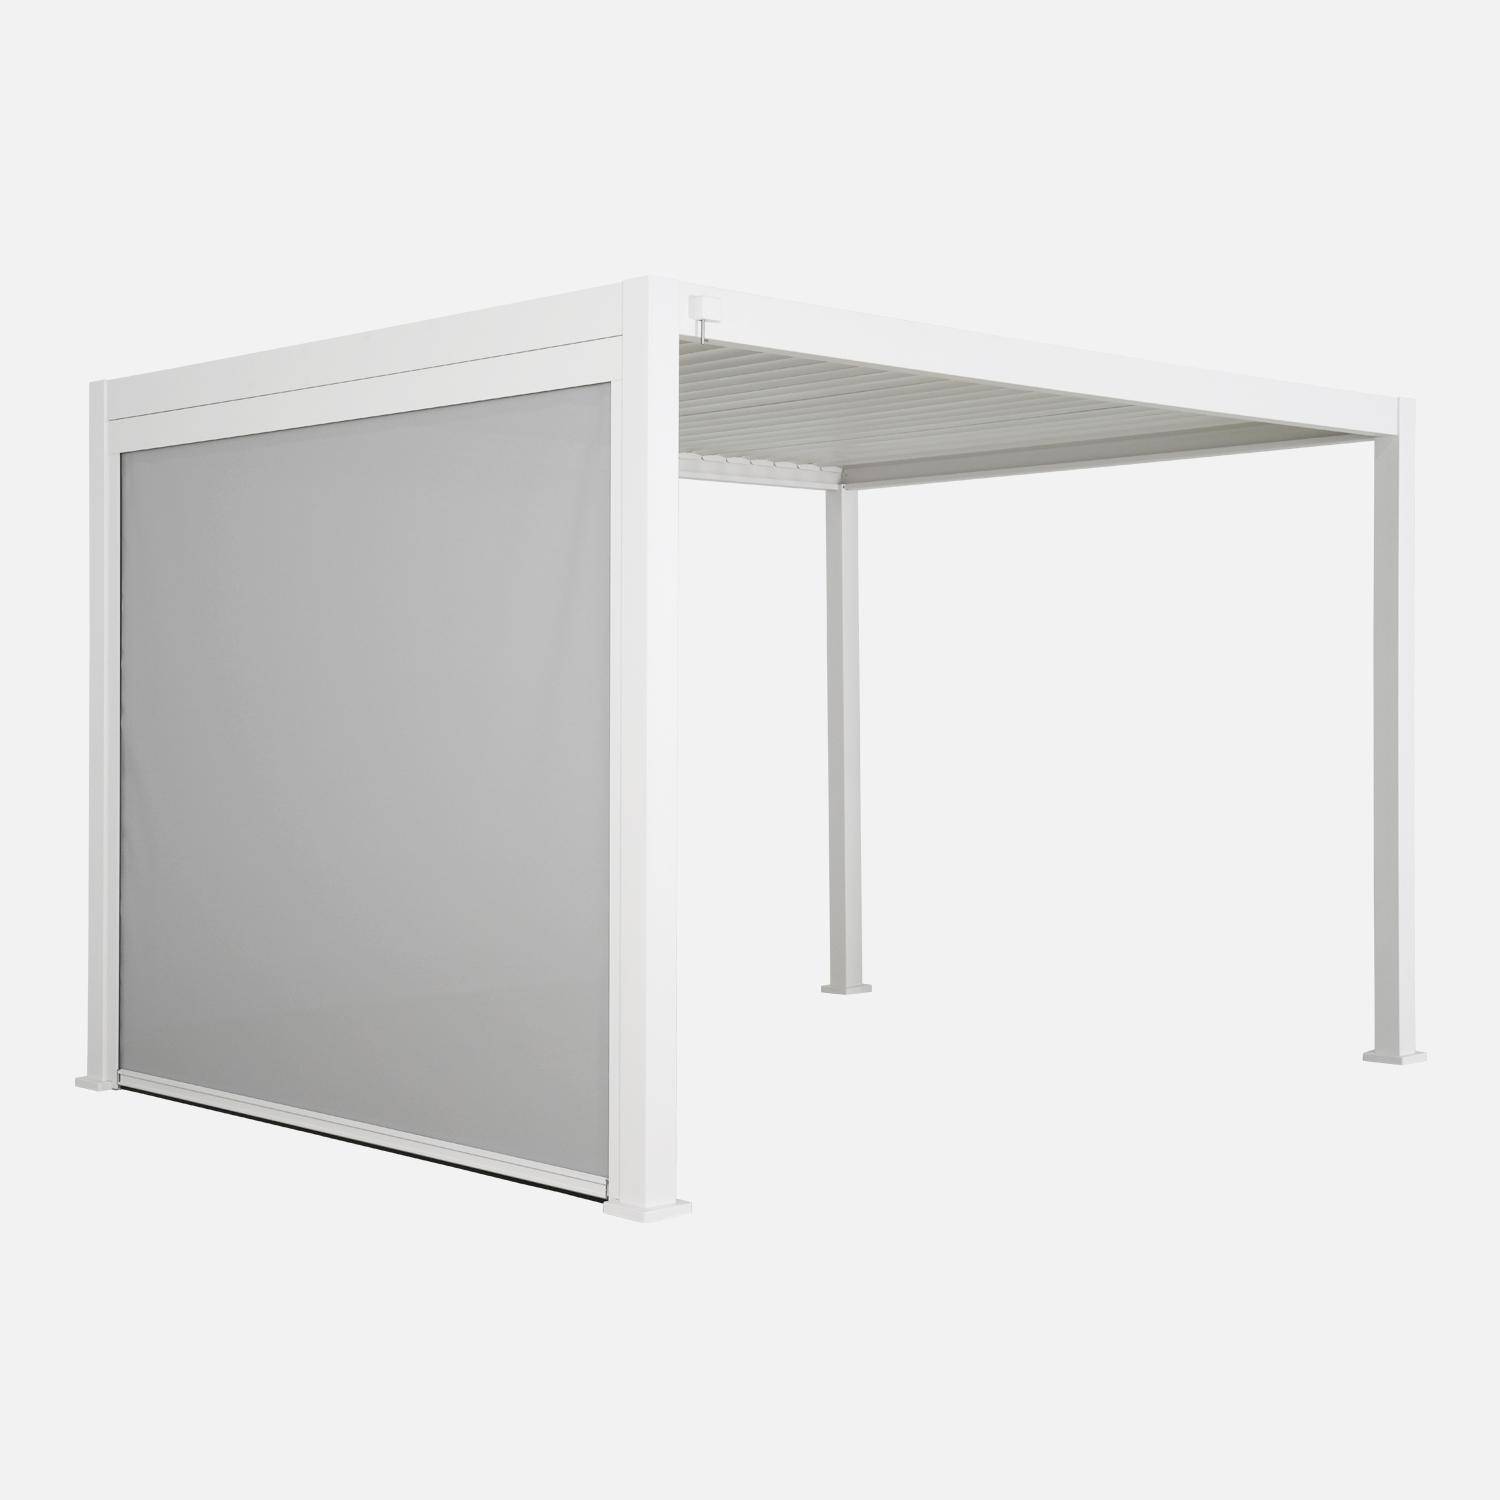 Pergola Bioclimatique blanche – Triomphe – 300x400cm, aluminium, à lames orientables + store 300cm Photo1